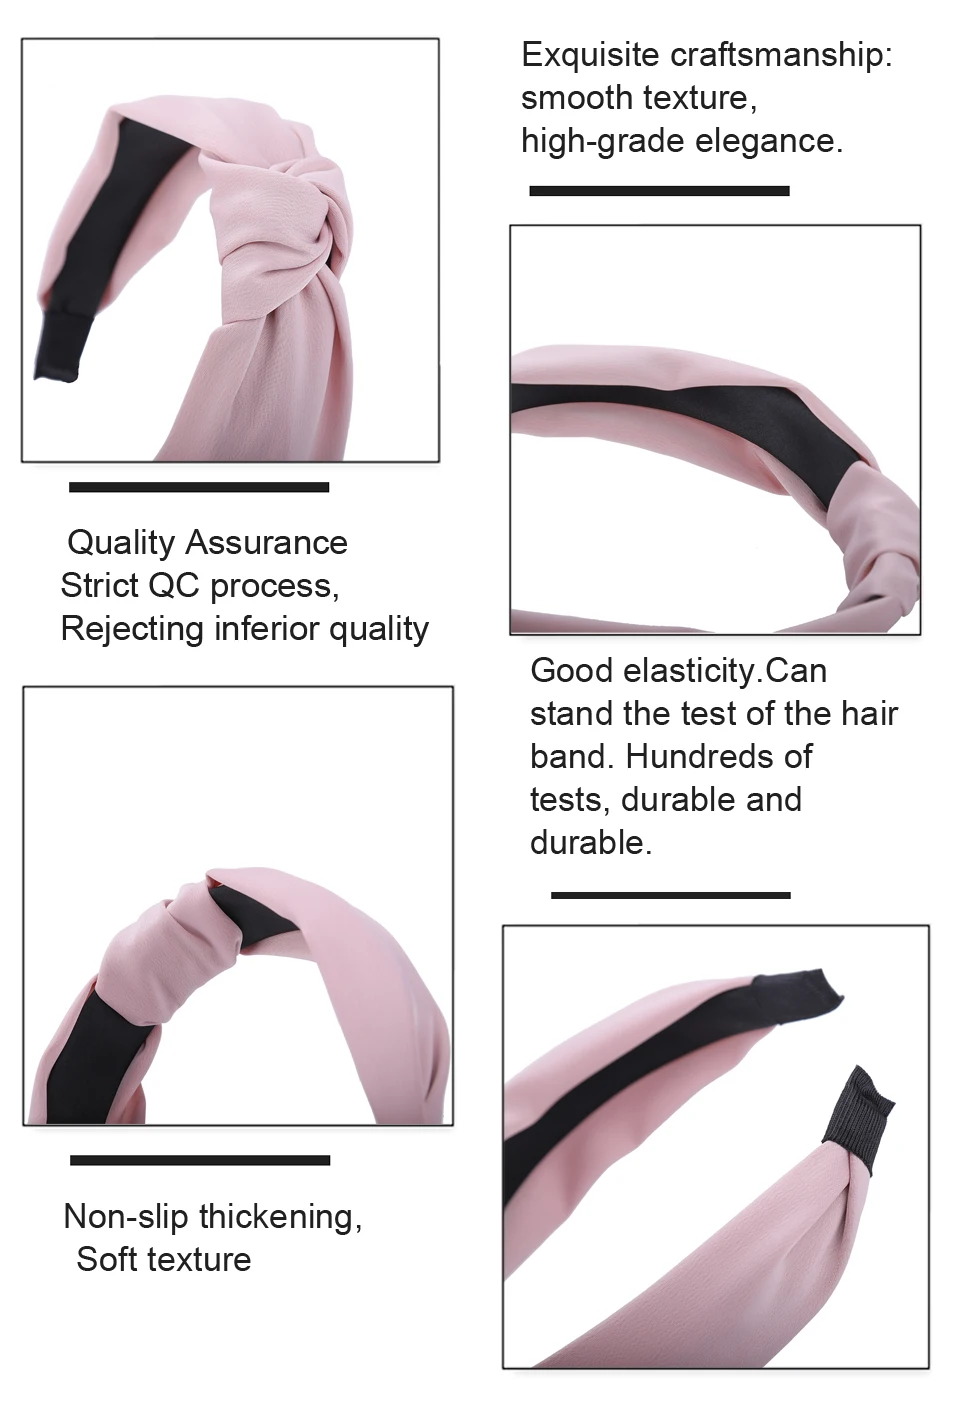 LEVAO, новая чалма, твердые повязки для волос, широкие винтажные аксессуары для волос, скрученная завязанная голова, обруч для волос для женщин